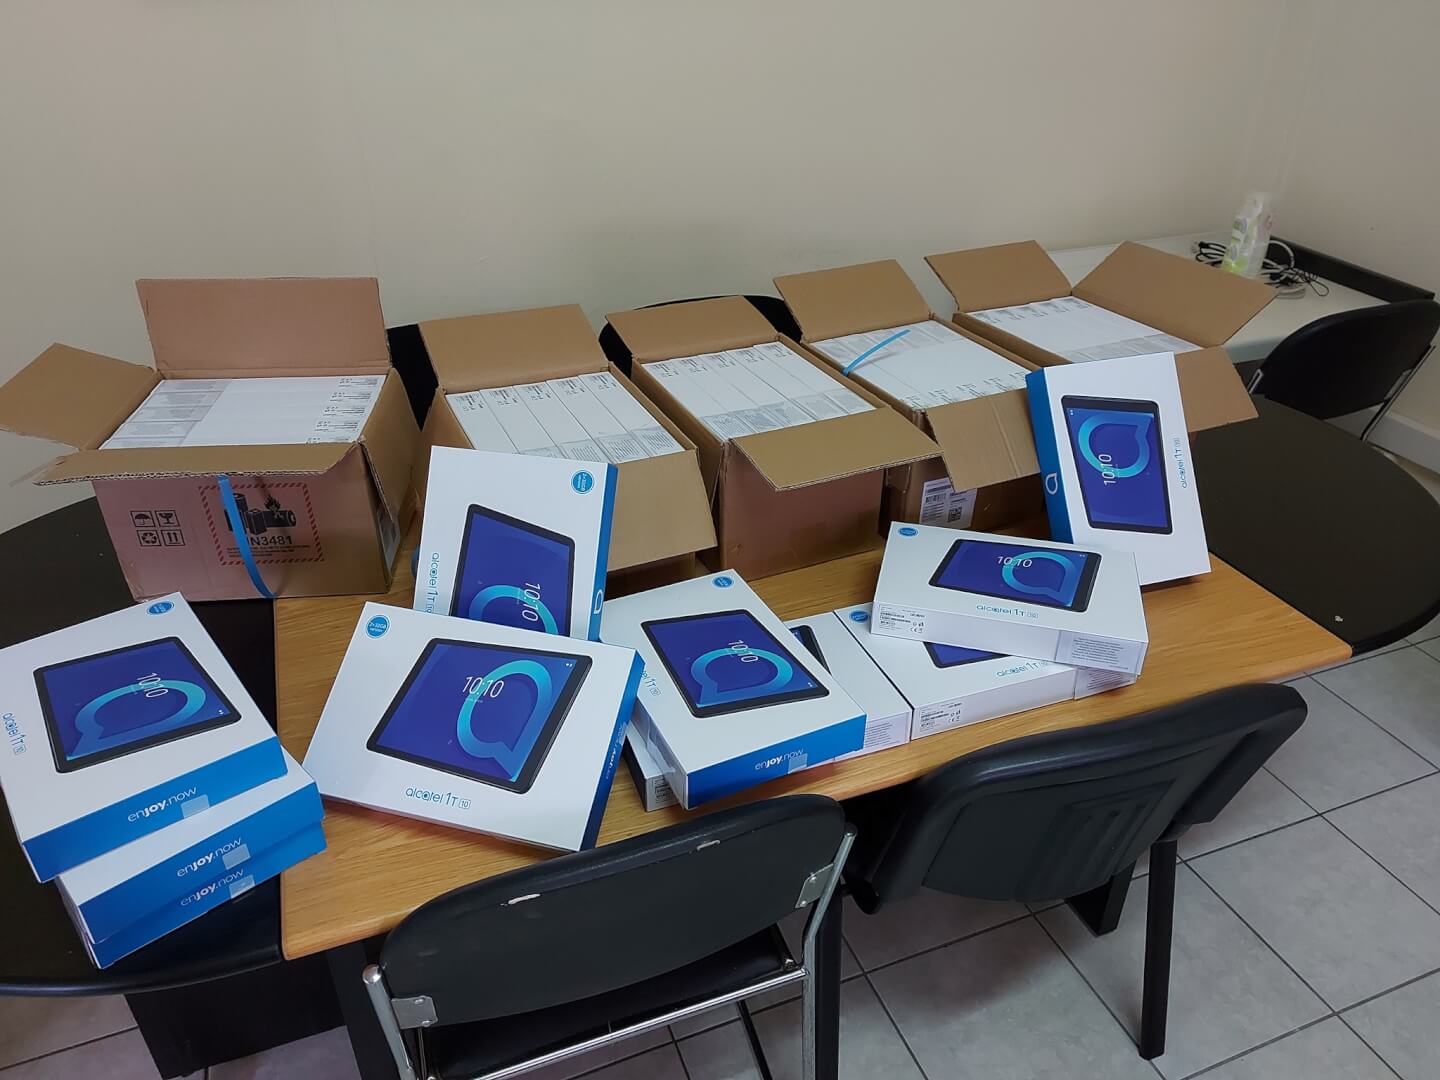 Ηλιούπολη: Πολιτική Αντιπαράθεση Στο Δημοτικό Συμβούλιο Για Τα Tablet Σε Μαθητές